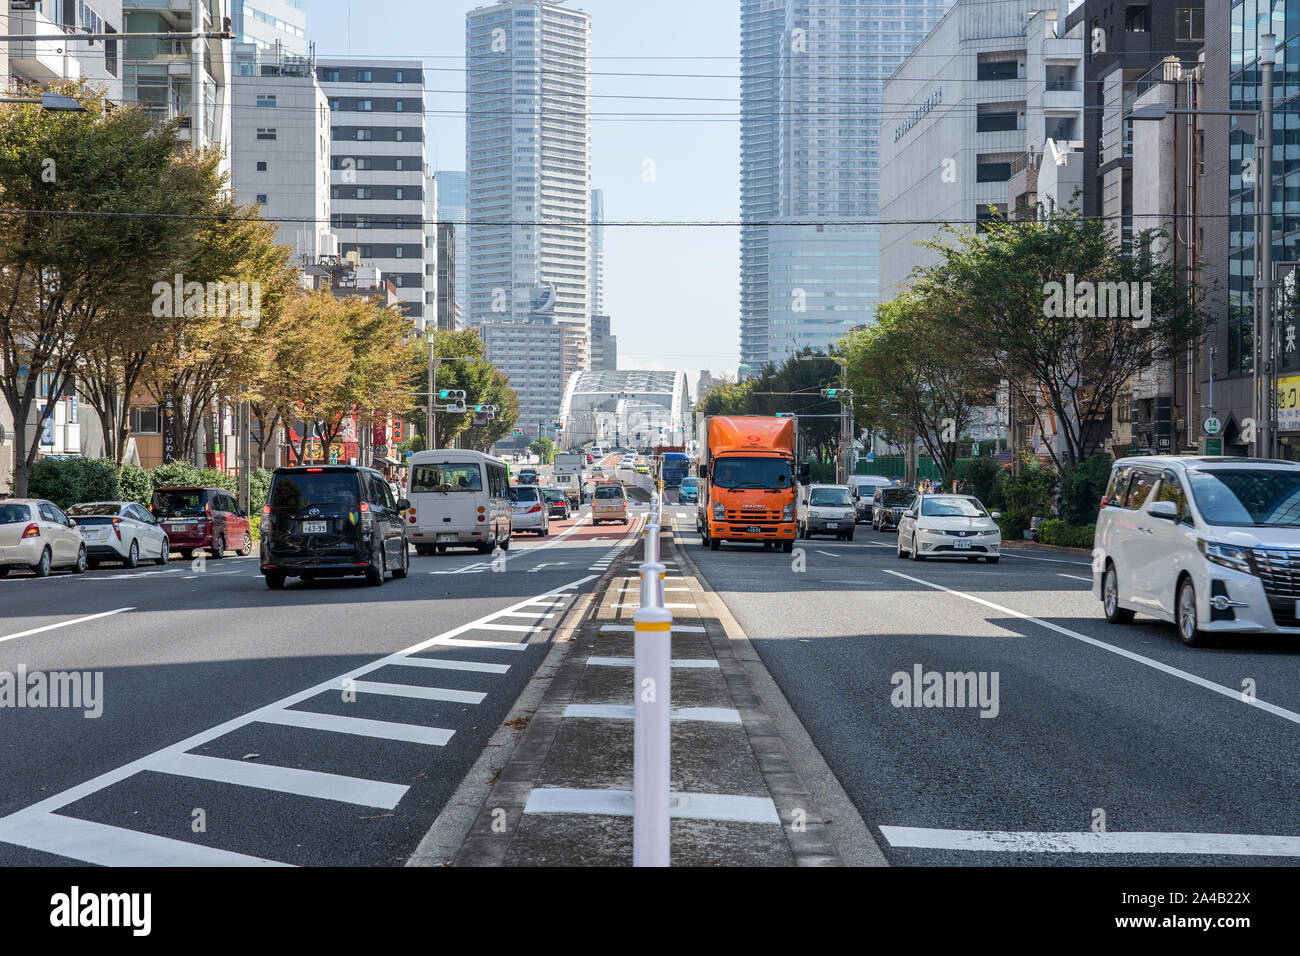 Tokio, Japan - OKTOBER 6, 2018. Die zentrale Perspektive der befahrenen Straße voller Autos und Lastwagen in Tokio. Der Blick auf die Straße in einem japanischen Ci Stockfoto